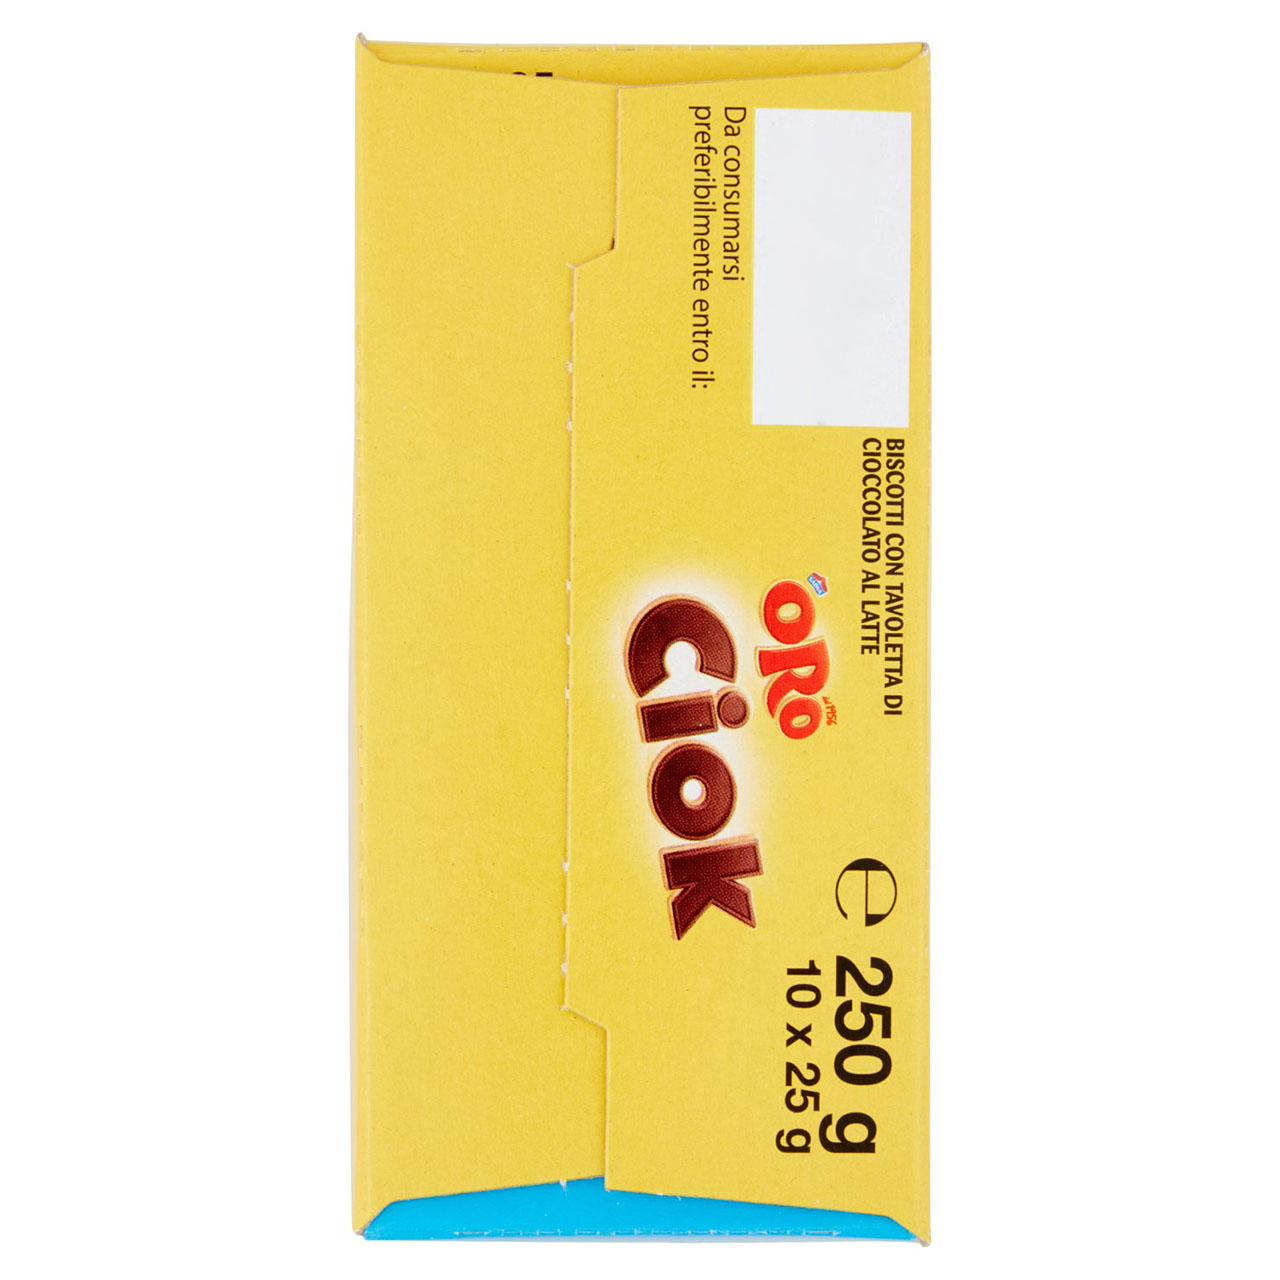 Oro Ciok Latte 10 x 25 g in vendita online